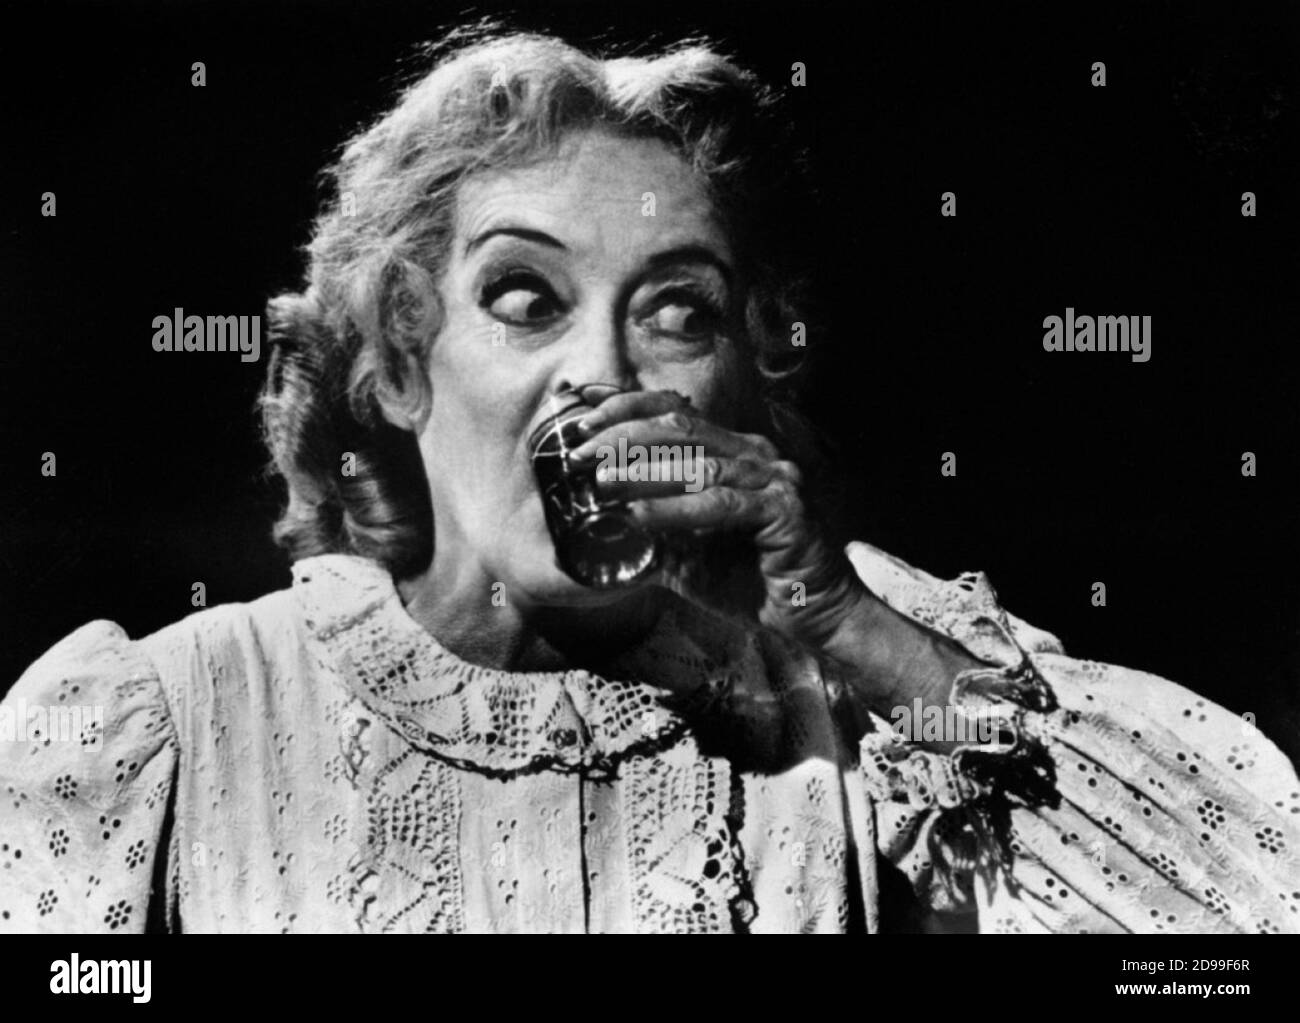 1963 , USA : Pubblicity Still für den Film mit BETTE DAVIS mit dem Titel WHAT EVER HAPPENED TO BABY JANE? ( Che fine ha fatto Baby Jane? ) , von ROBERT ALDRICH , aus einem Roman von Henry Farrell , WARNER BROS. Und Seven Arts productions - KINO - FILM - REGISTA CINEMATOGRAFICO - TRILLER - HORROR - FILM ----- NICHT FÜR WERBEZWECKE --- NON PER USO PUBBLICITARIO --- NICHT FÜR DEN GEBRAUCH VON GADGETS - ACHTUNG: Dieses Foto kann nur von Publikationen im Zusammenhang mit der Werbung für den oben genannten Film reproduziert werden. Nur Für Redaktionelle Zwecke.------- Archivio GBB Stockfoto